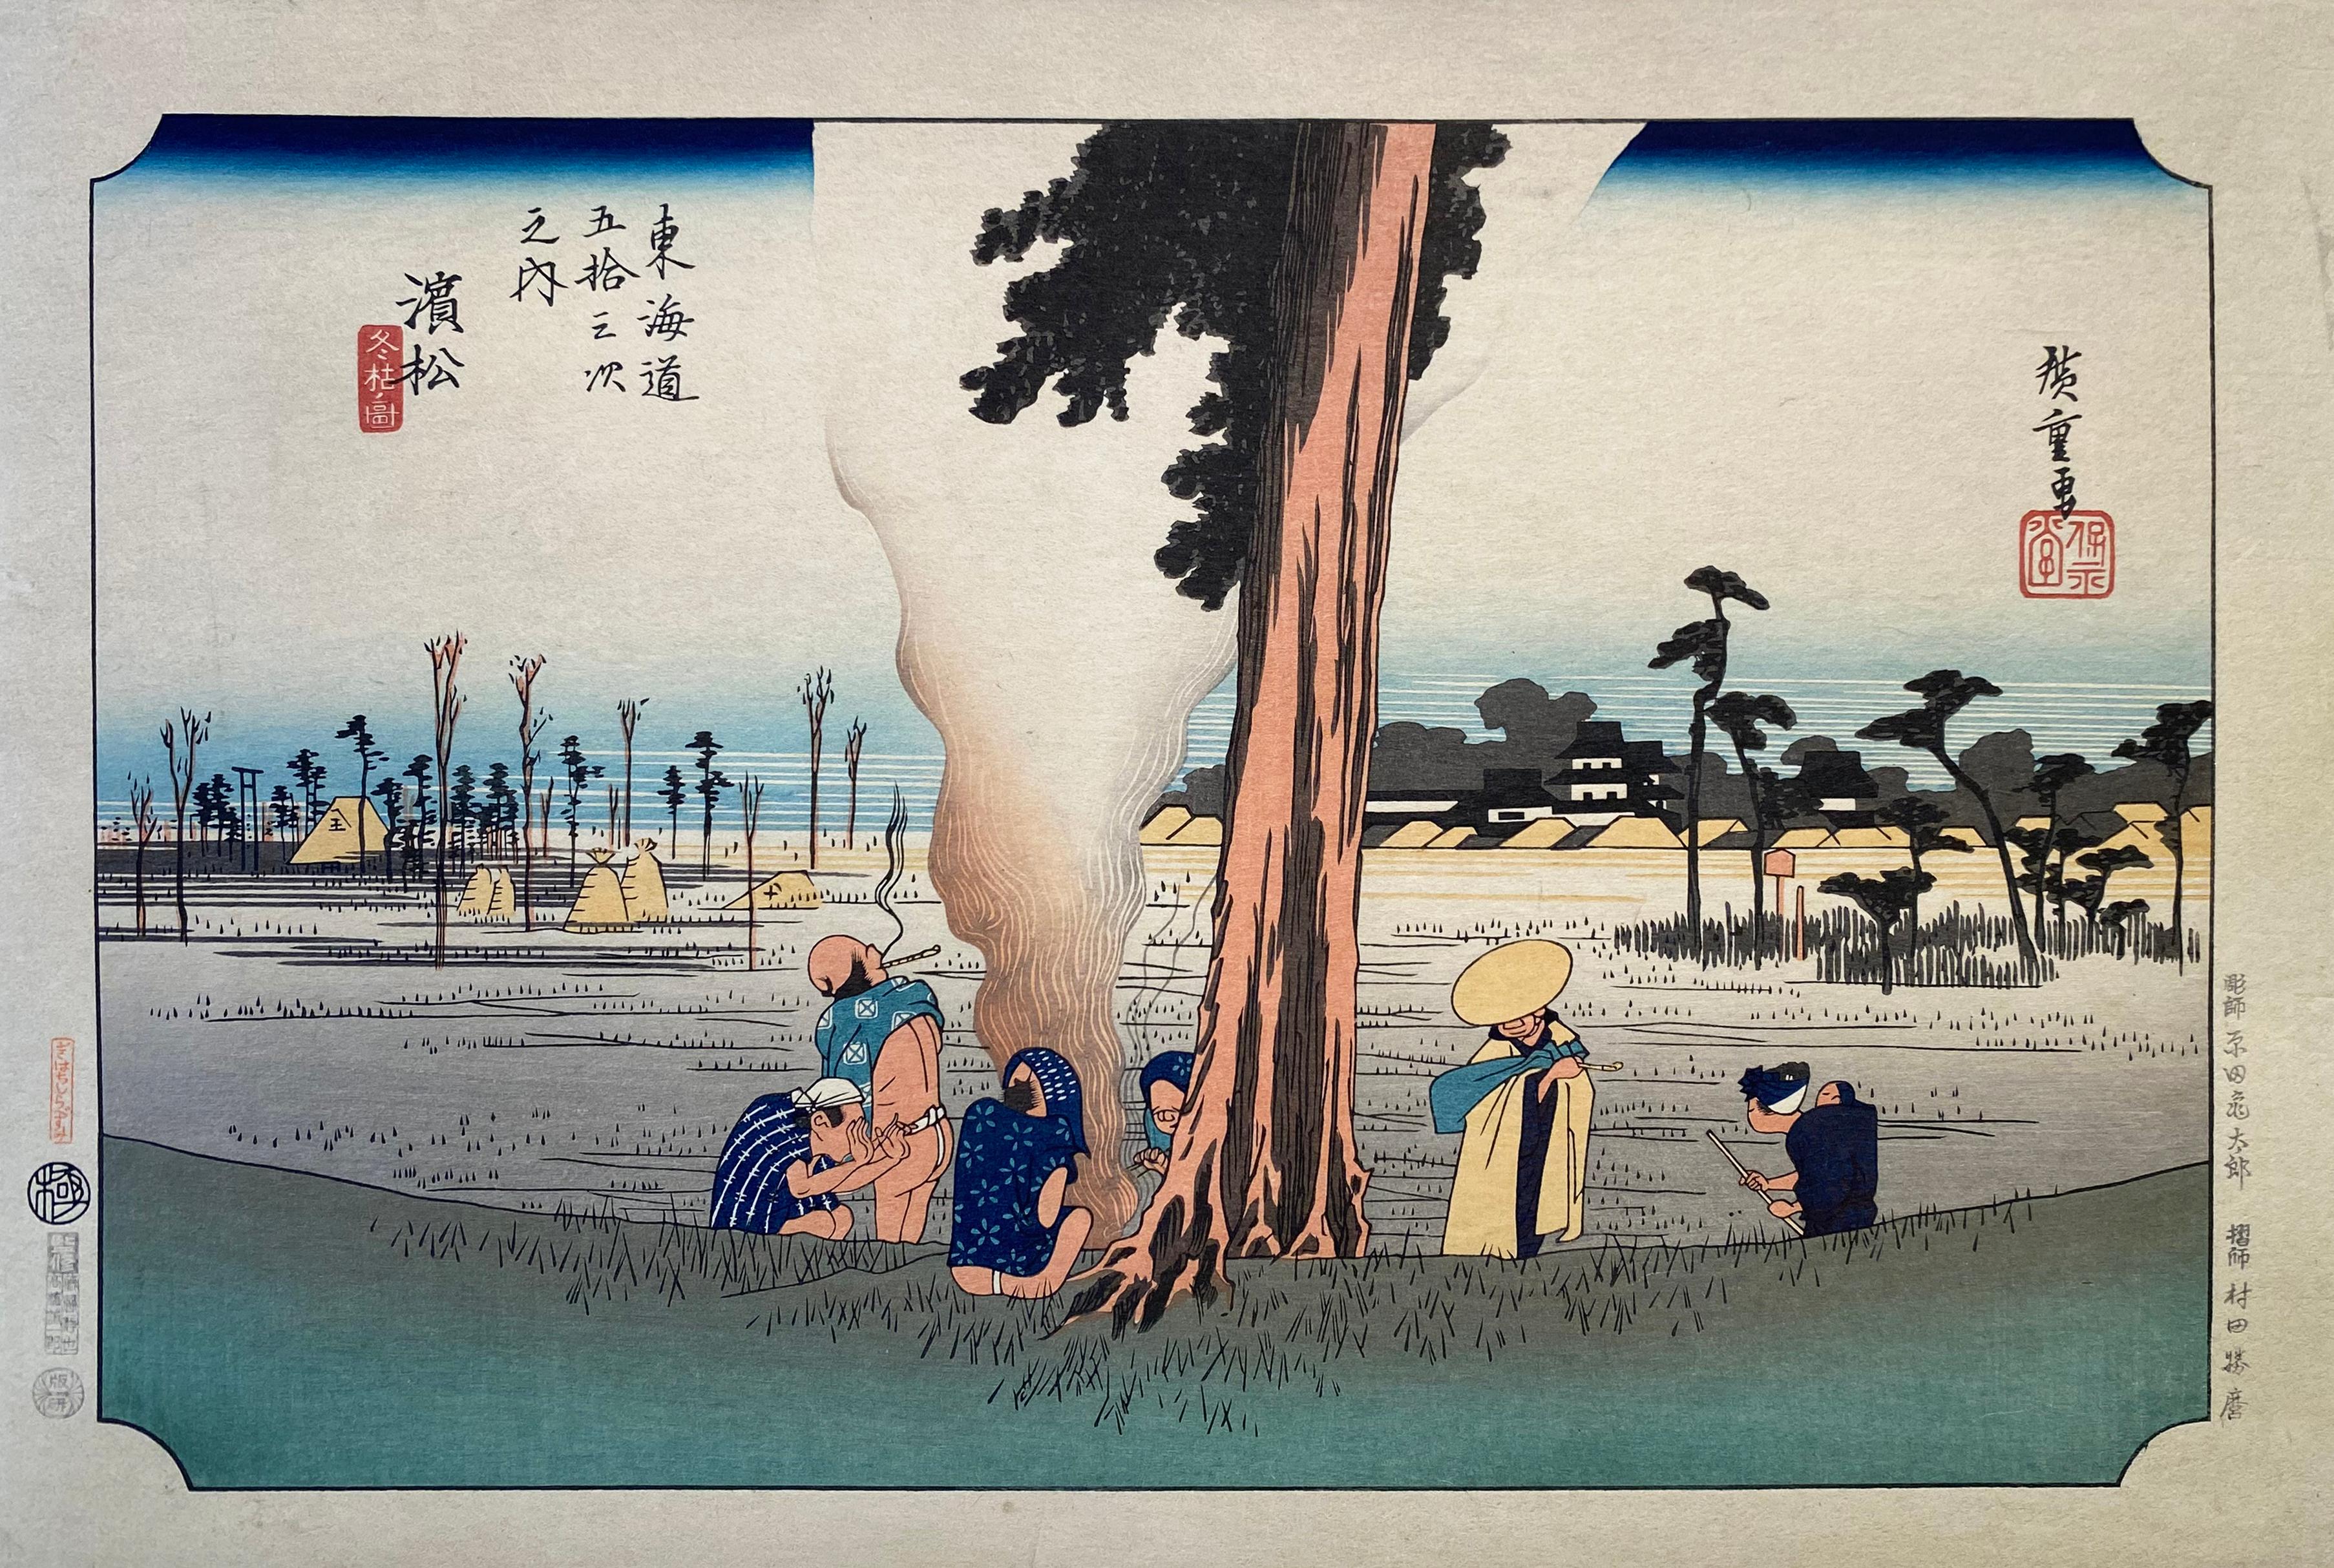 Utagawa Hiroshige (Ando Hiroshige) Landscape Print - 'View of Hamamatsu', After Utagawa Hiroshige 歌川廣重, Ukiyo-e Woodblock, Tokaido